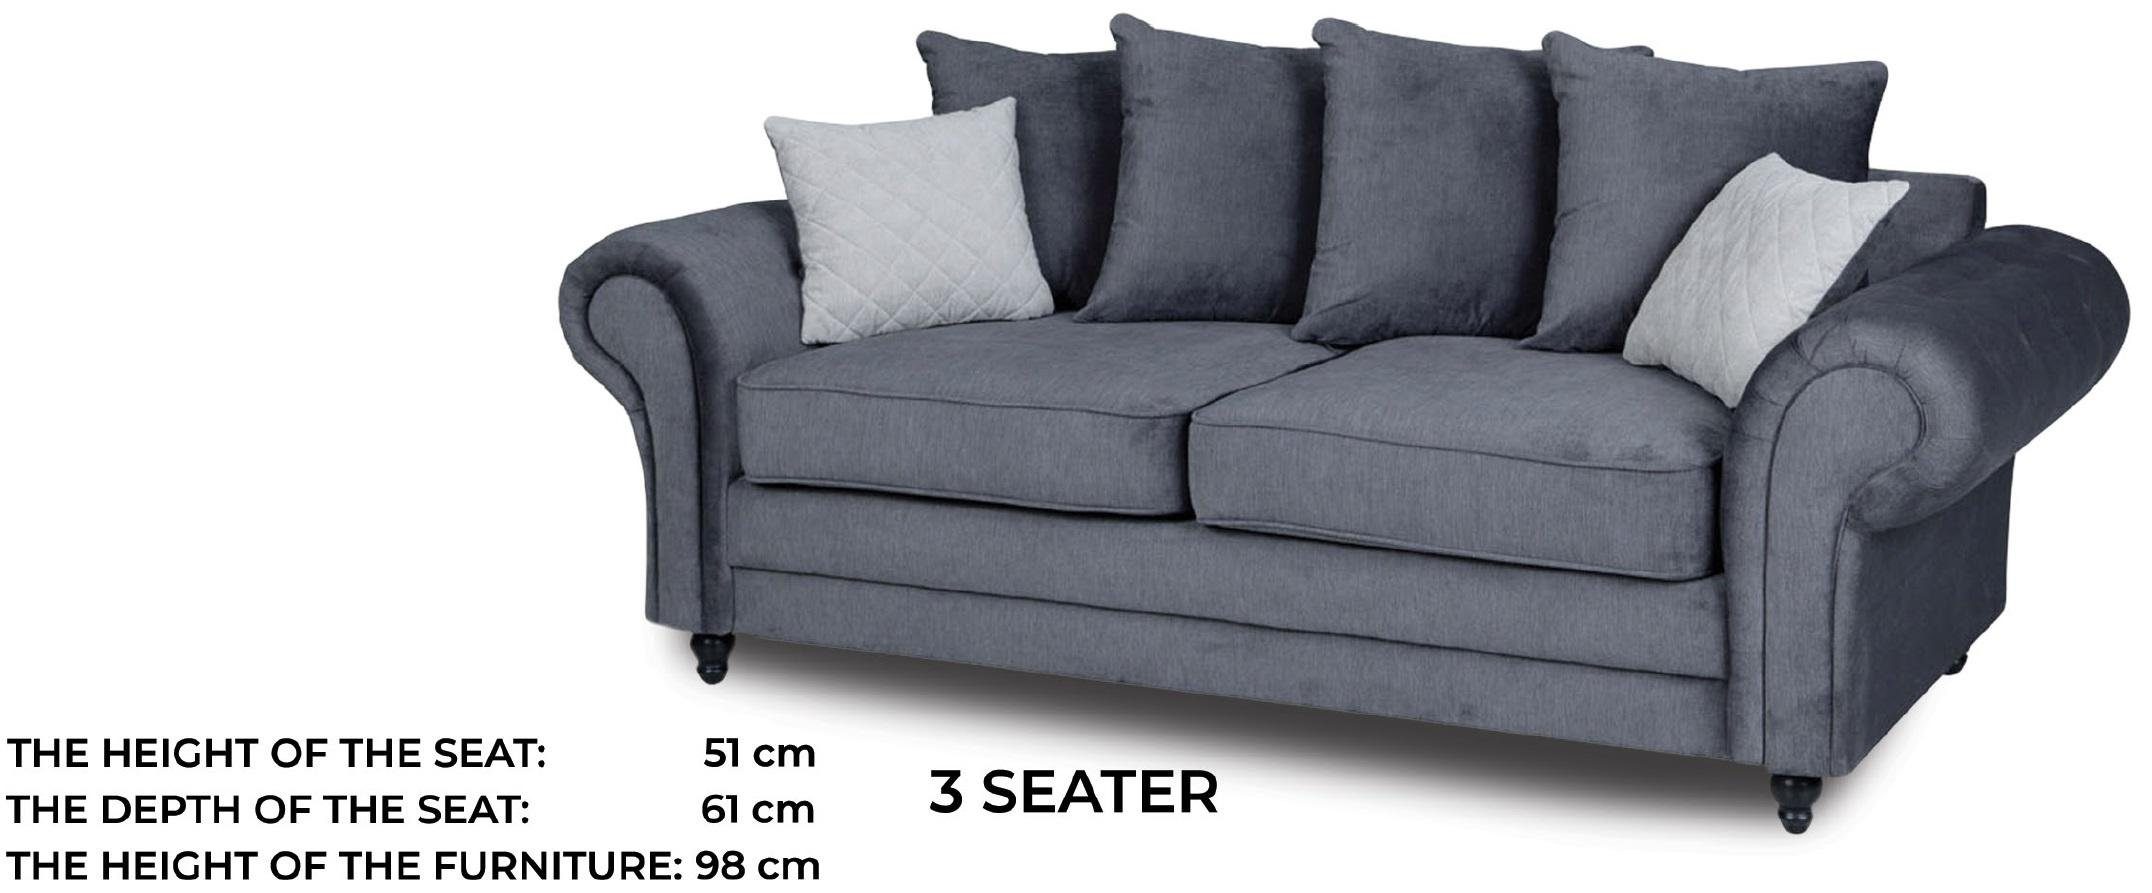 JVmoebel Sofa Luxus Couch Europe Neu, Dreisitzer Made Polster in Stilvoll Grauer moderne